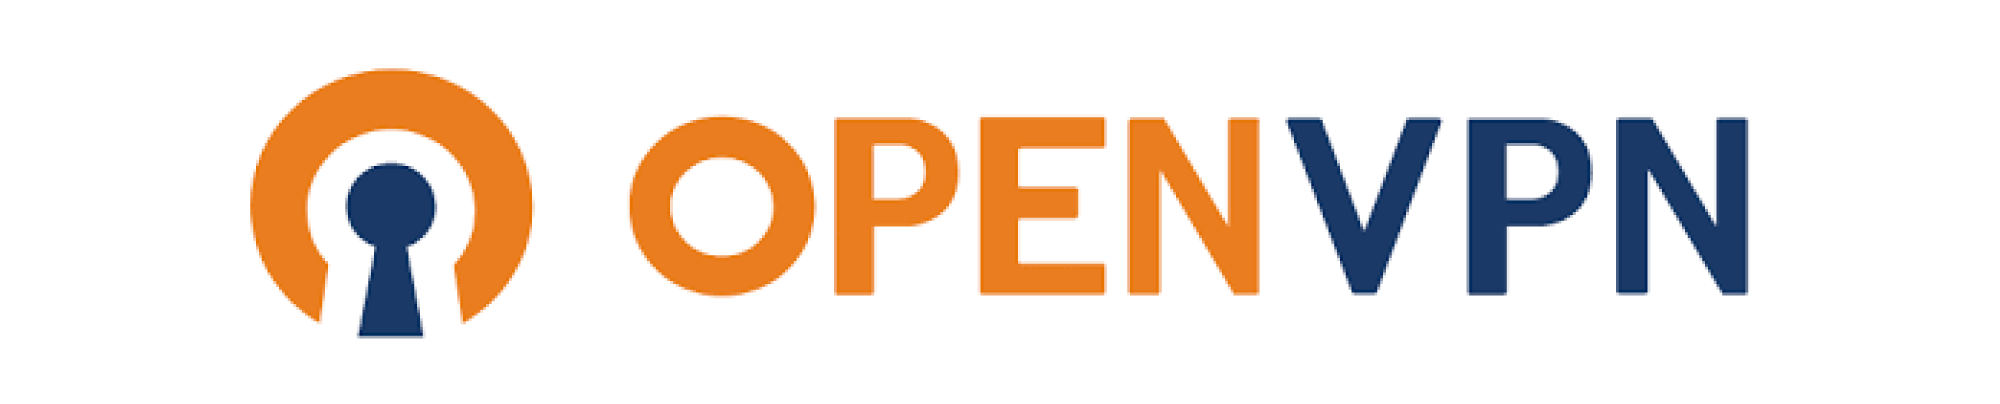 OpenVPN User Access Reviews